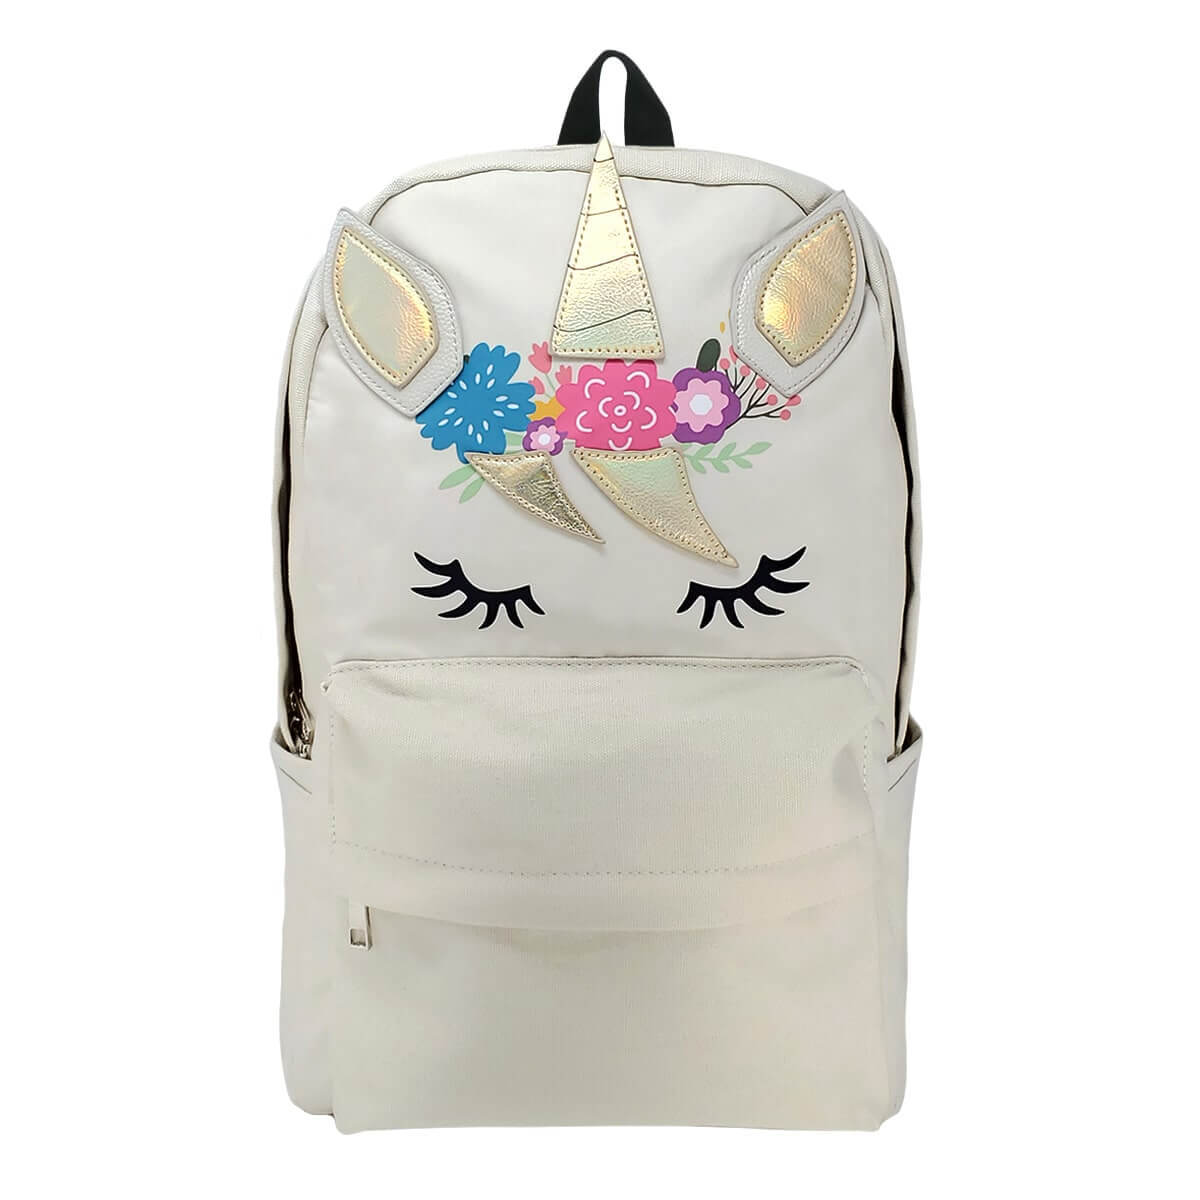 Unicorn Girl Backpack - $34.99